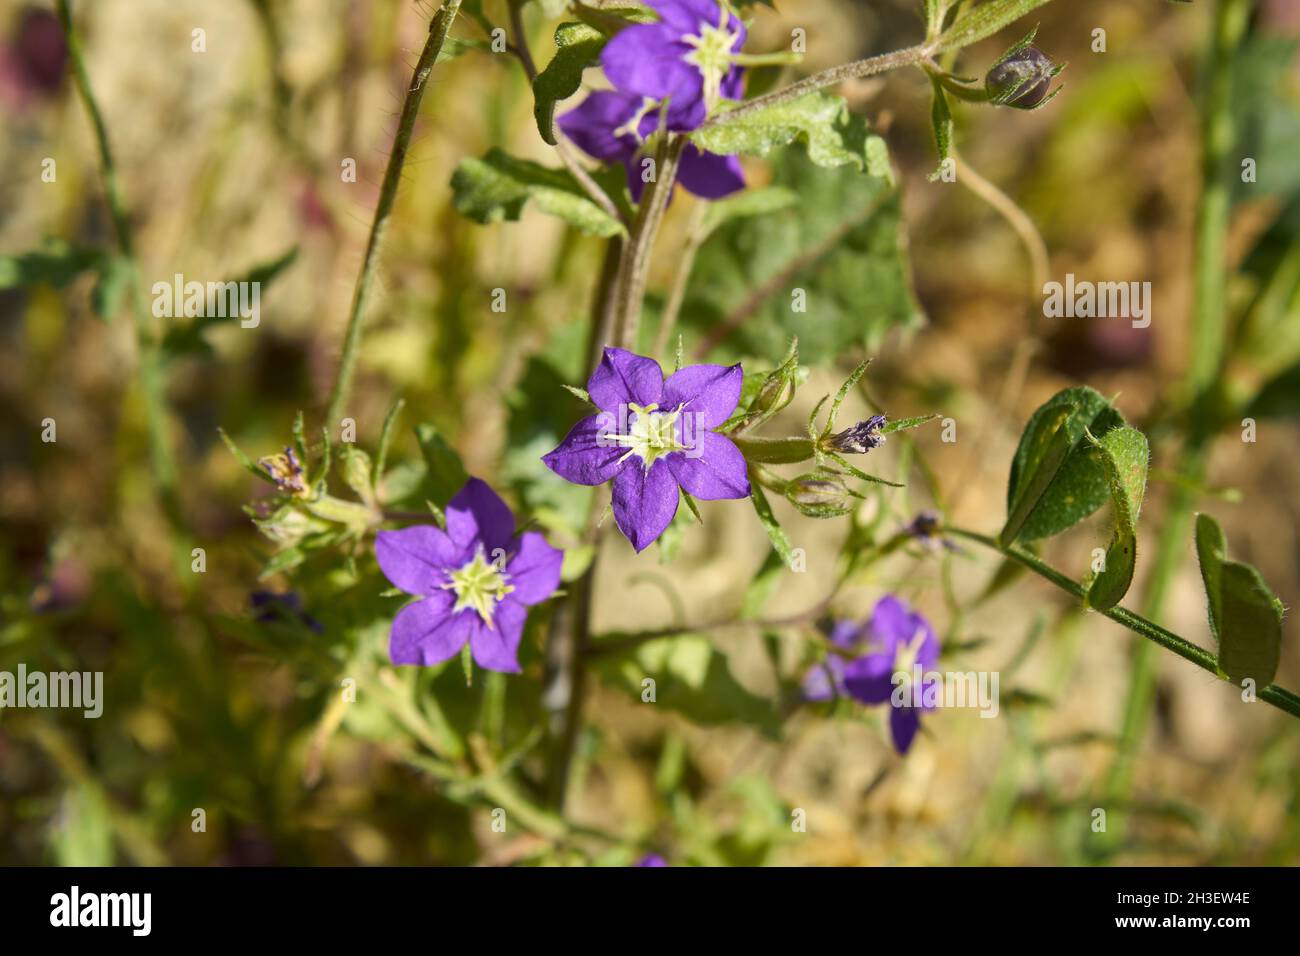 Legousia speculum veneris purple flowers Stock Photo